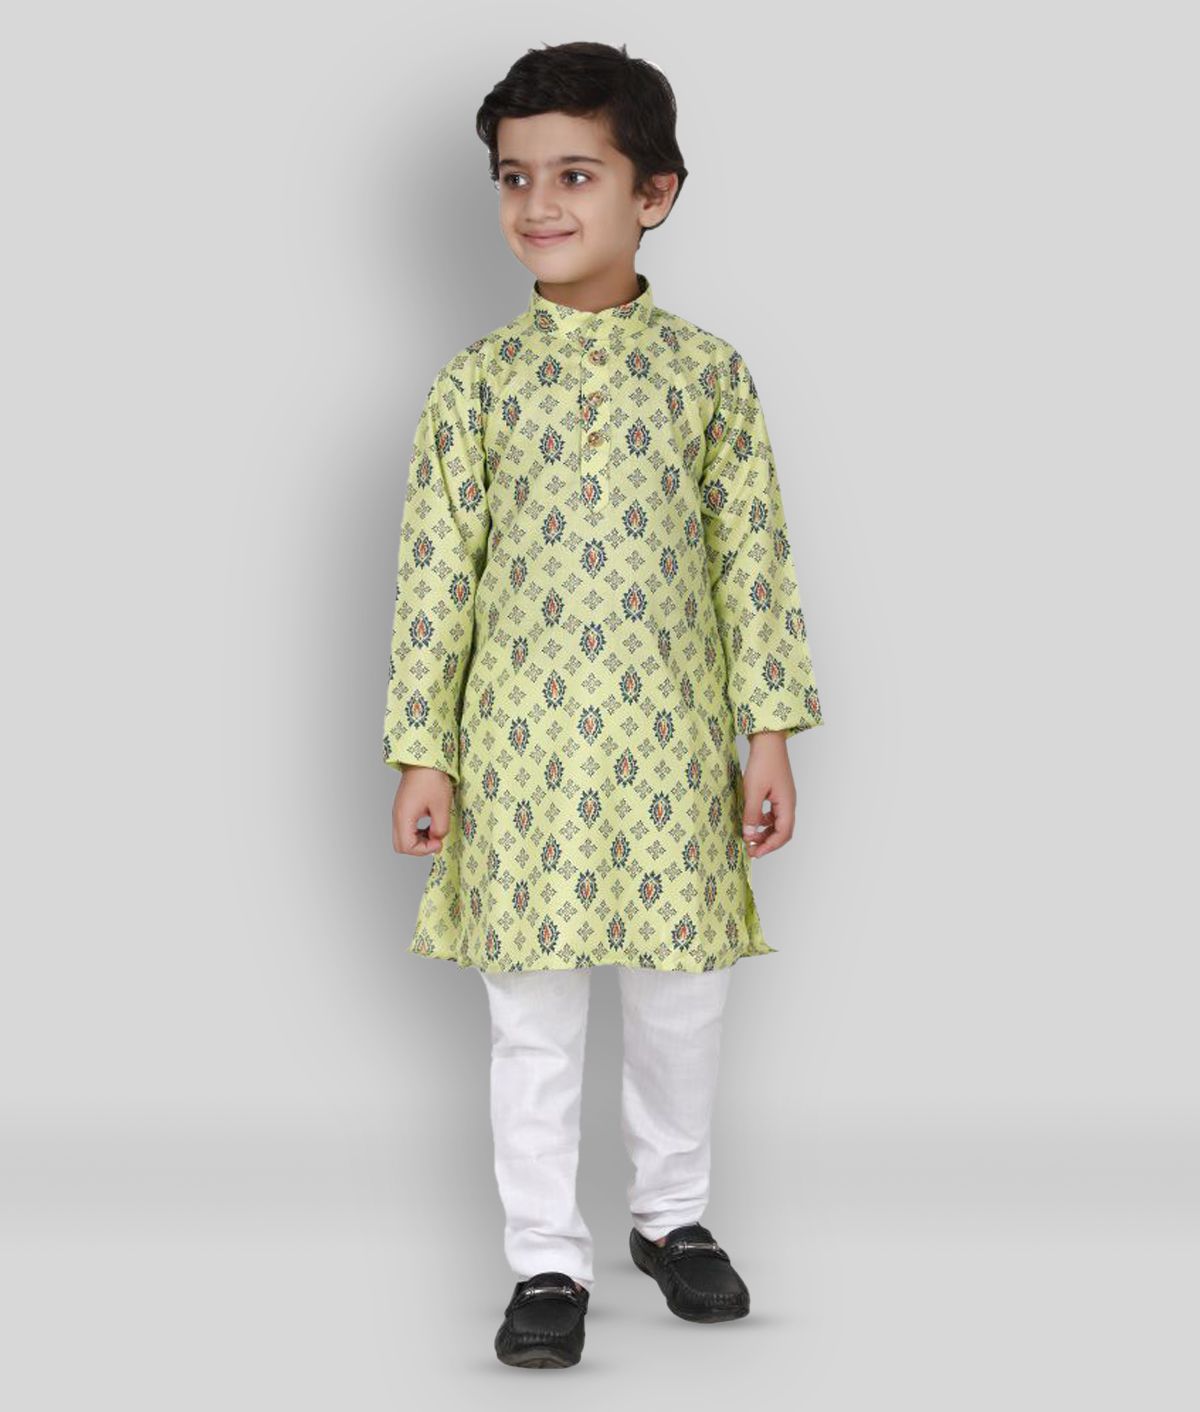     			Fourfolds Ethnic Wear Kurta Pyjama Set for kids and Boys_FE001